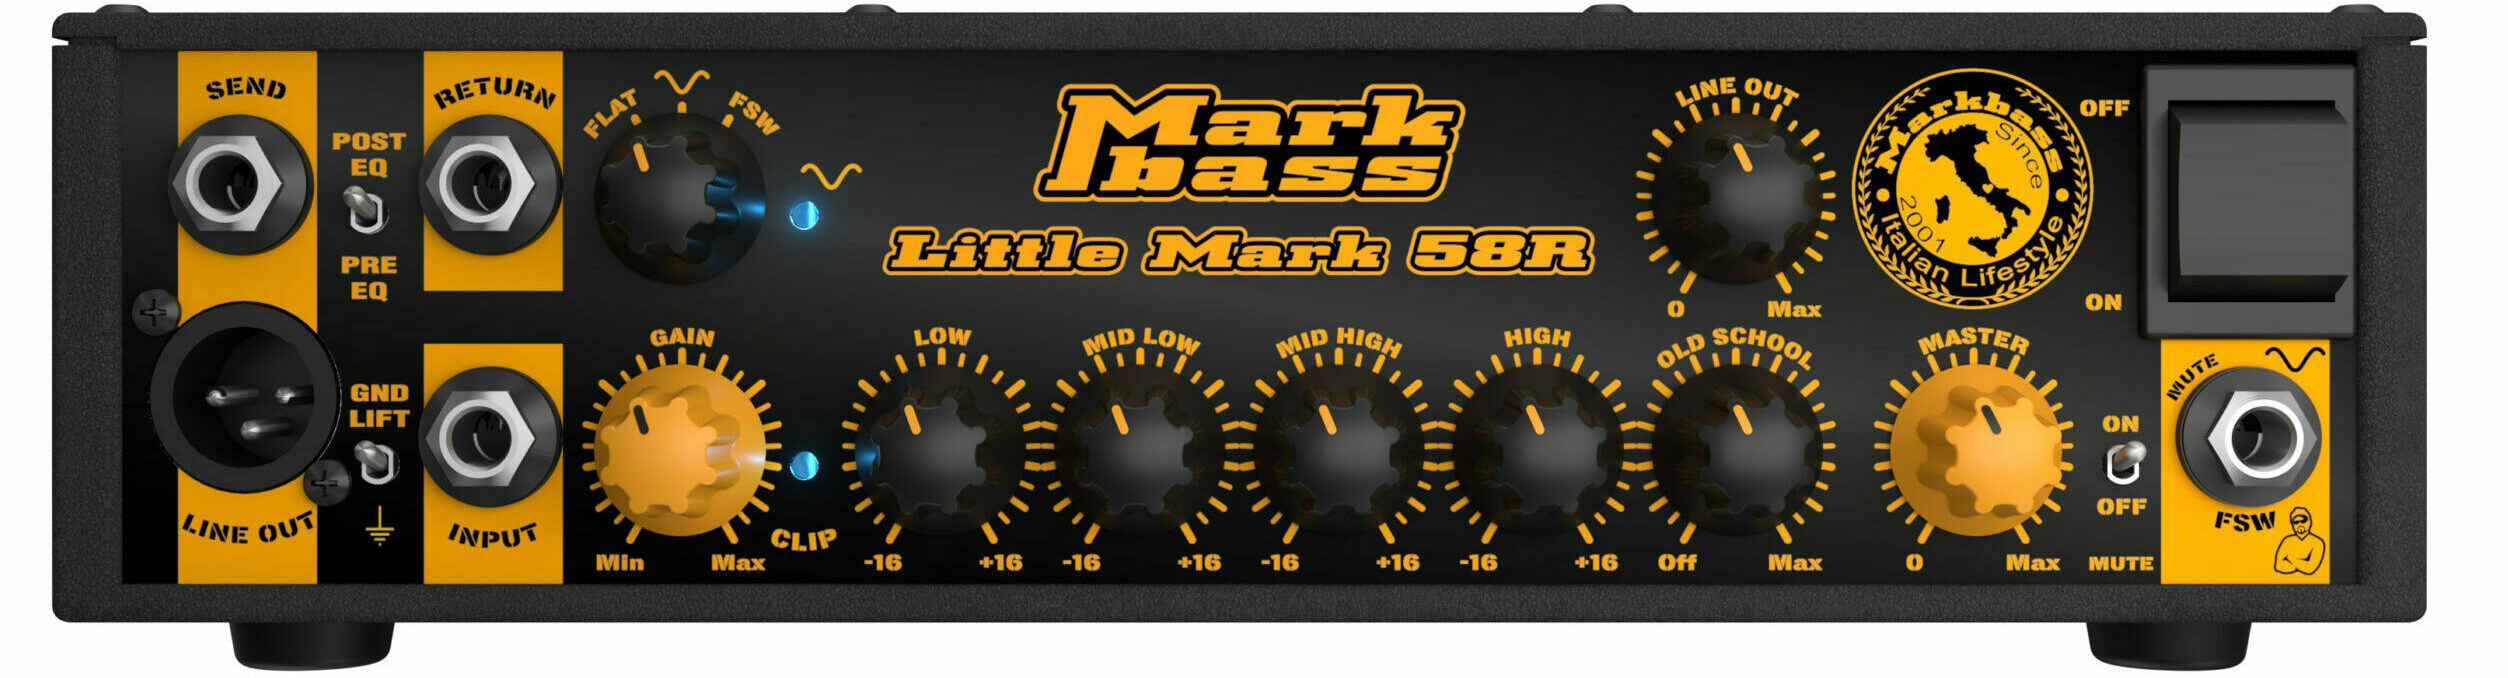 Markbass Little Mark 58r Head 500w - Bass Topteil - Variation 1